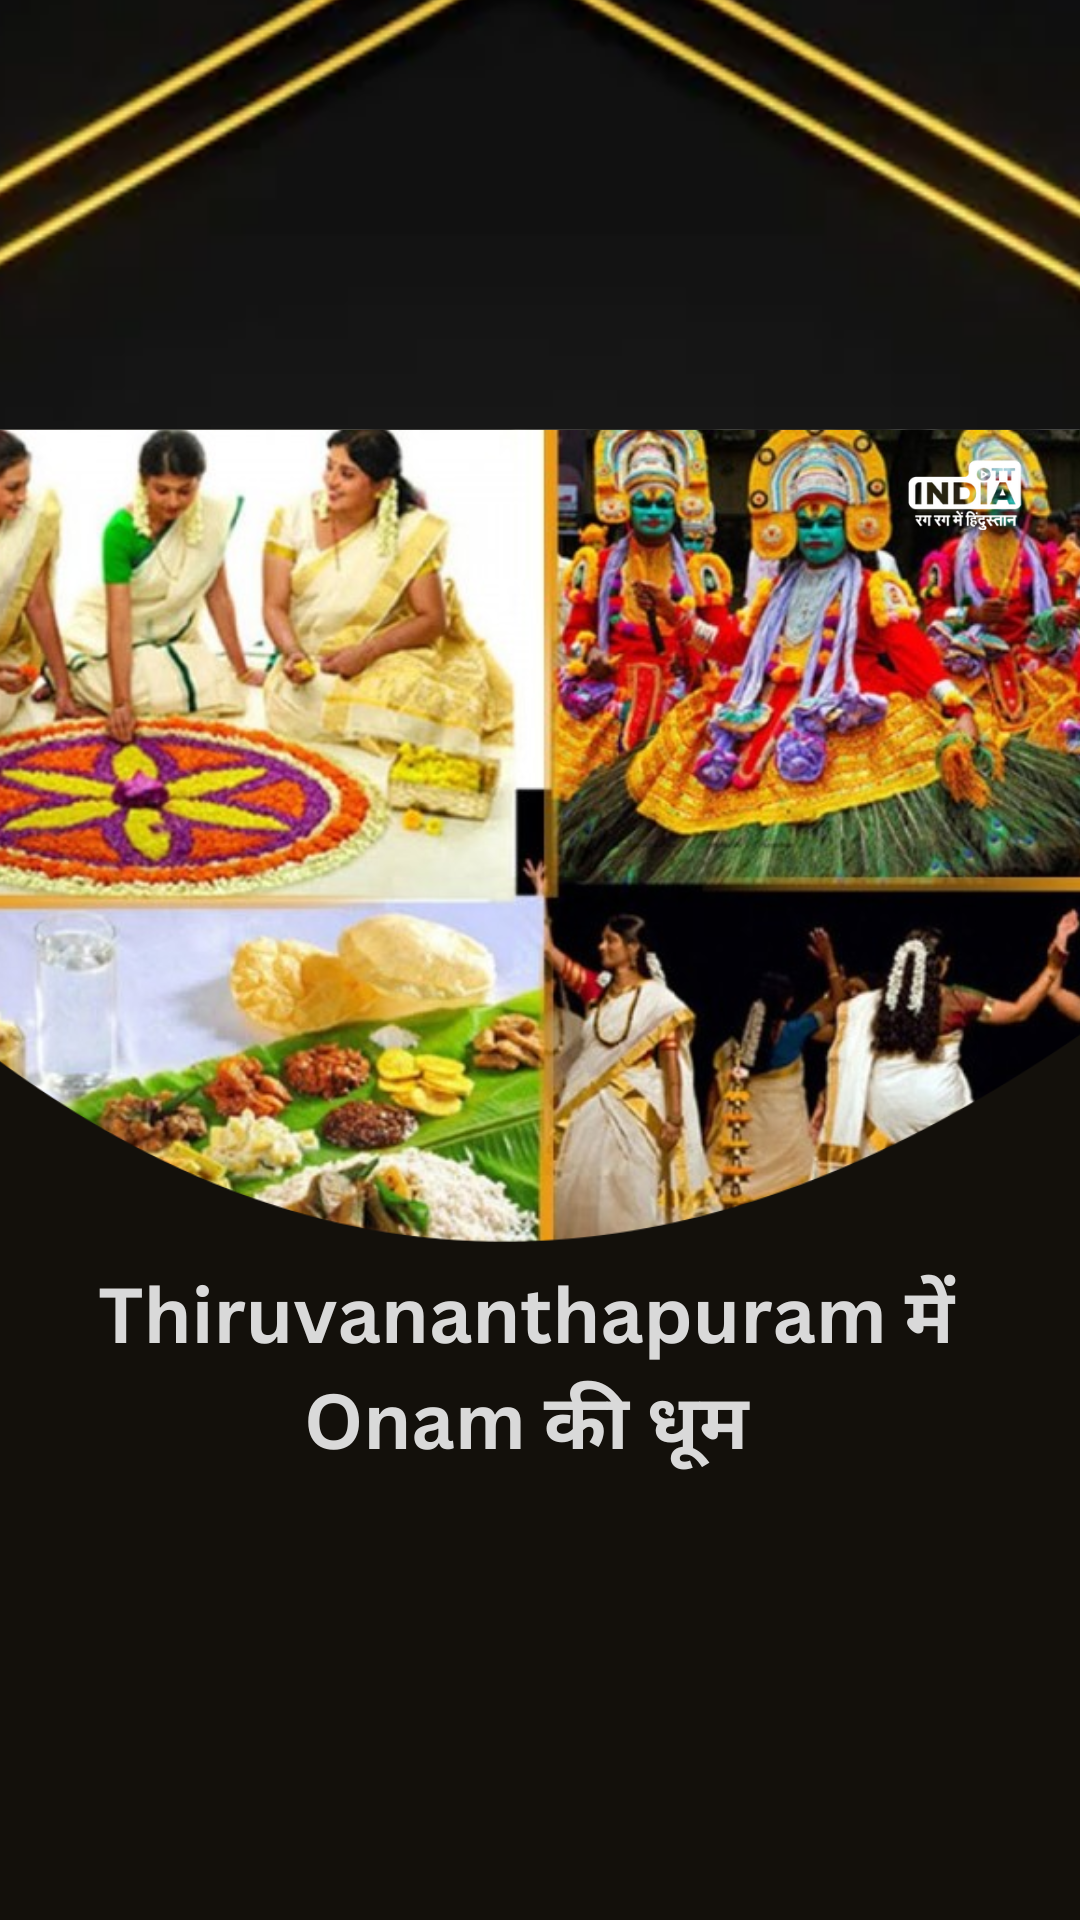 Kerala के Thiruvananthapuram में Onam की धूम, महिलाओं और लड़कियों ने गाया गाना | Video